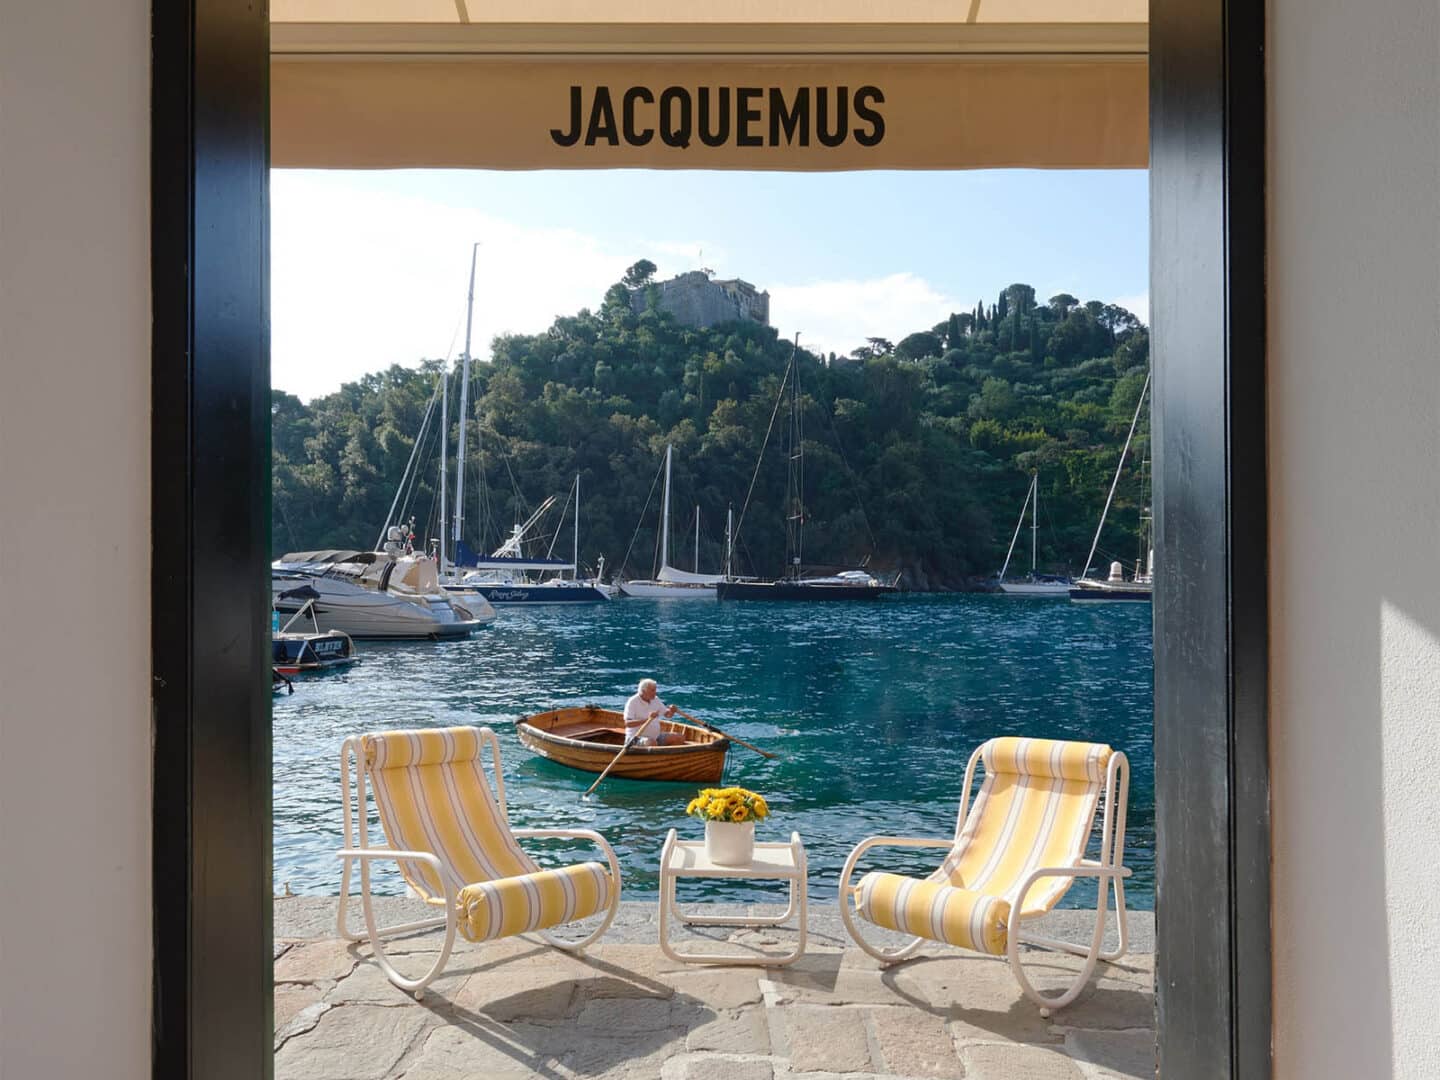 Read Jacquemus News & Analysis